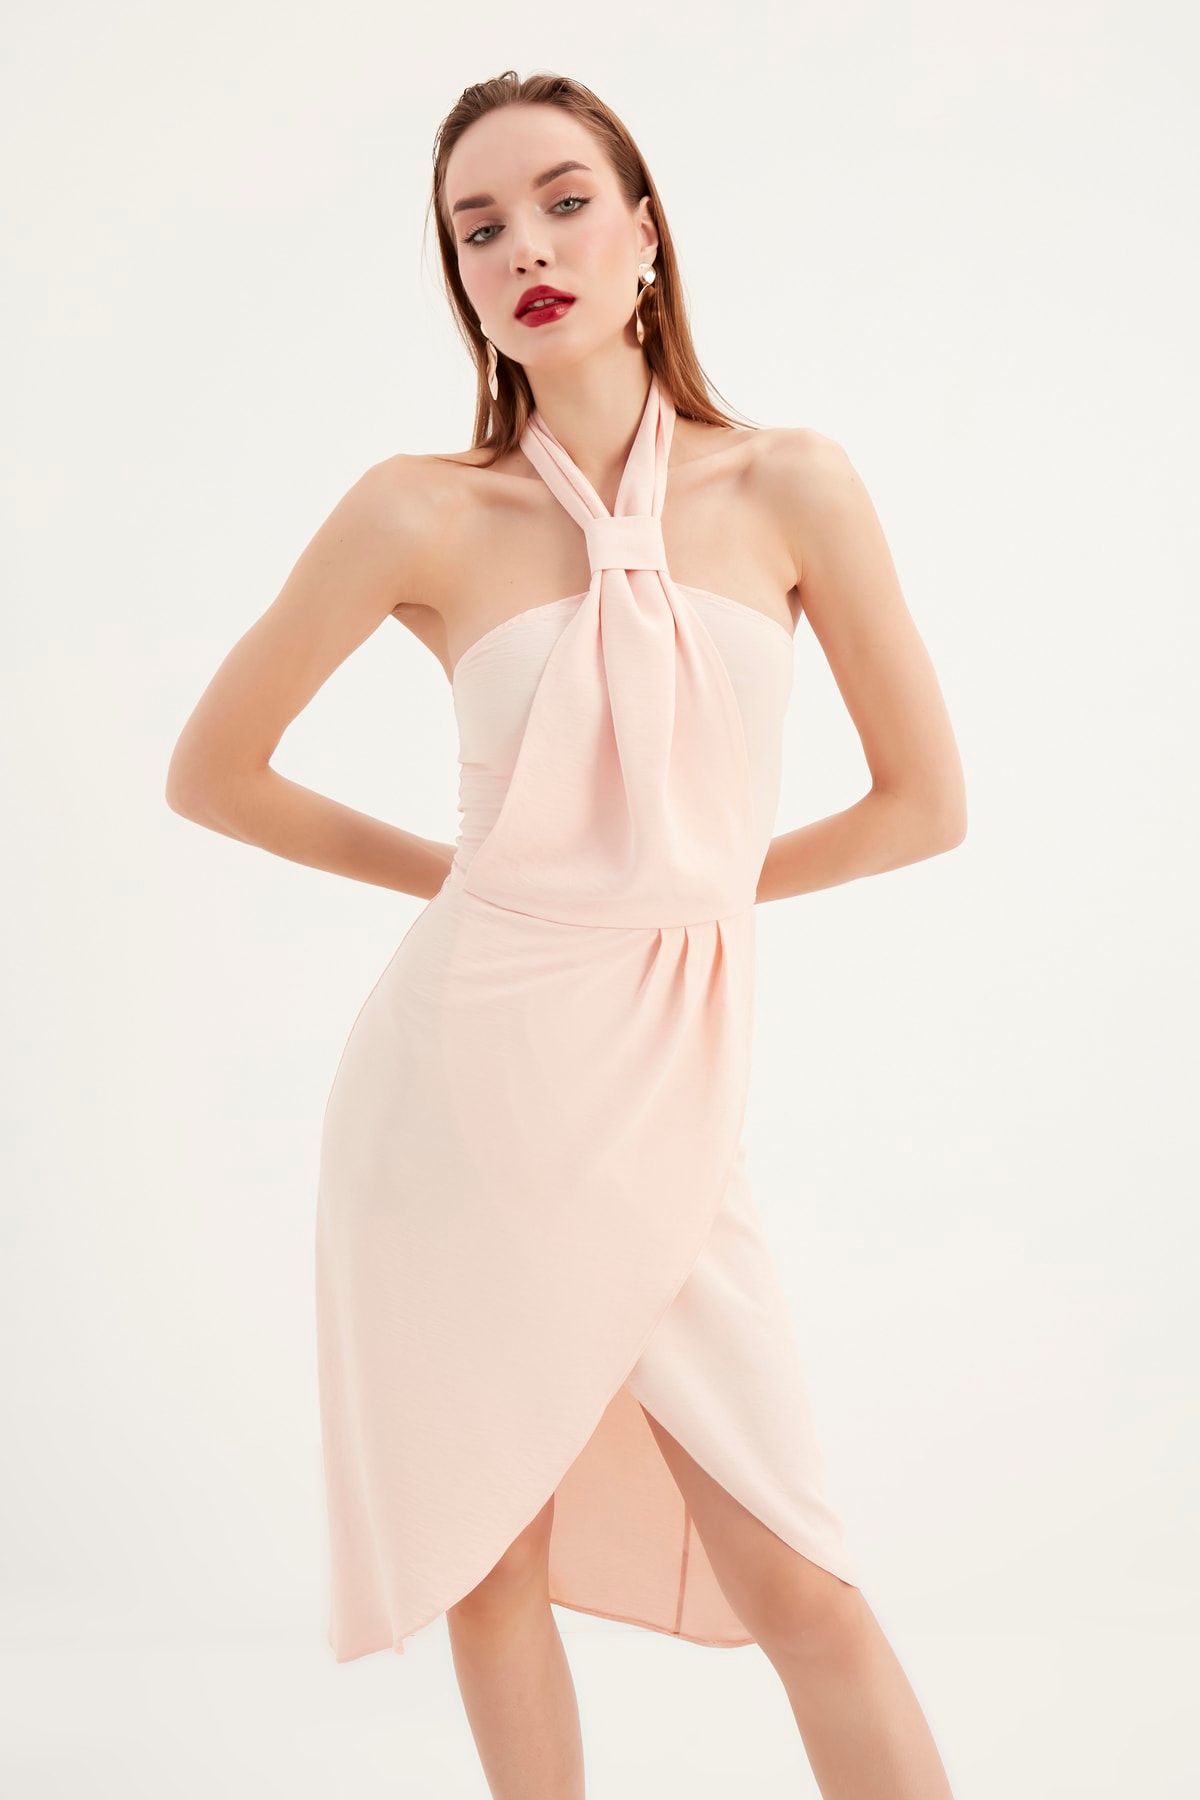 alpira Kadın Elbise -ayrobin Kumaş- Boyundan Bağlamalı Kravat Yaka - Kolsuz Tasarım Elbise M0014p